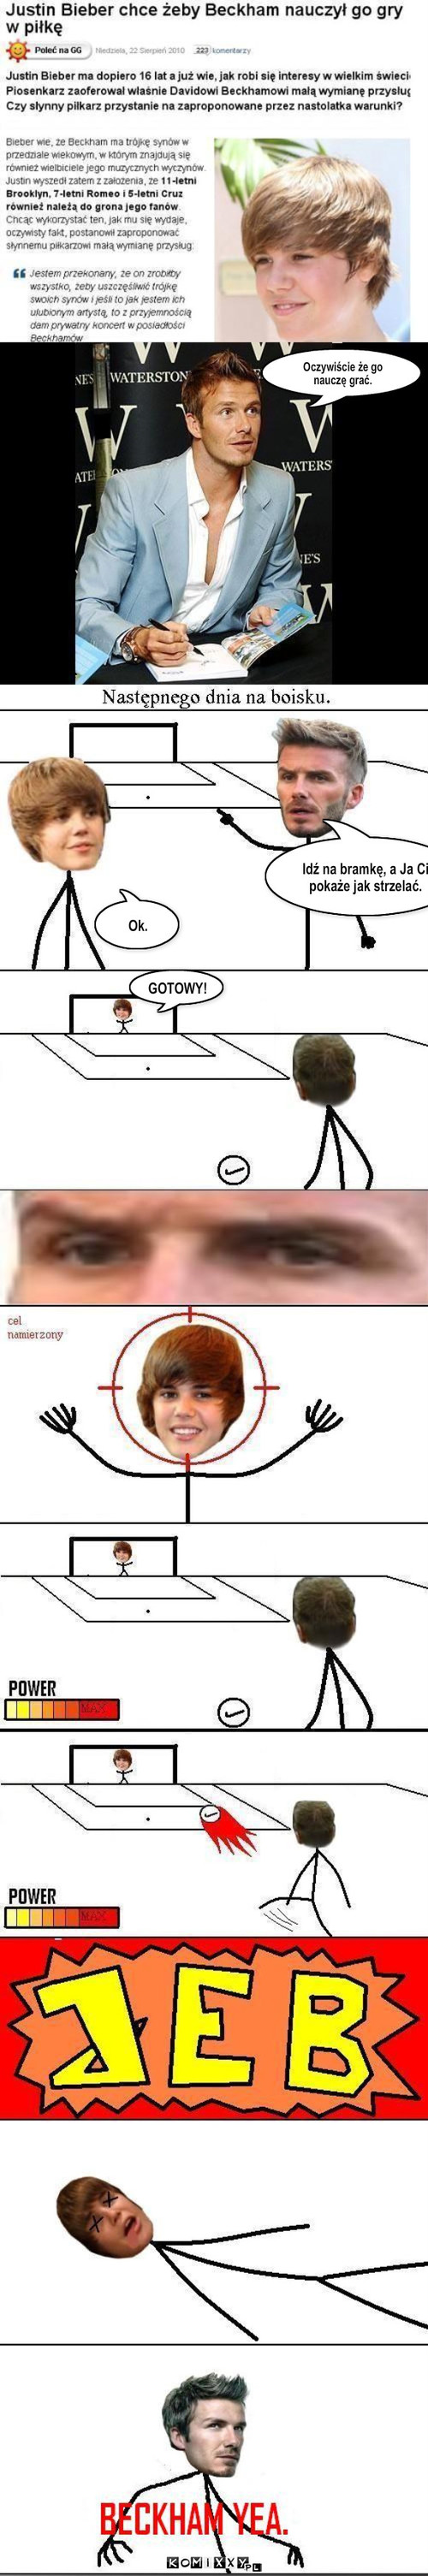 Bieber i Beckham – Oczywiście że go nauczę grać. Idź na bramkę, a Ja Ci pokaże jak strzelać. Ok. GOTOWY! 